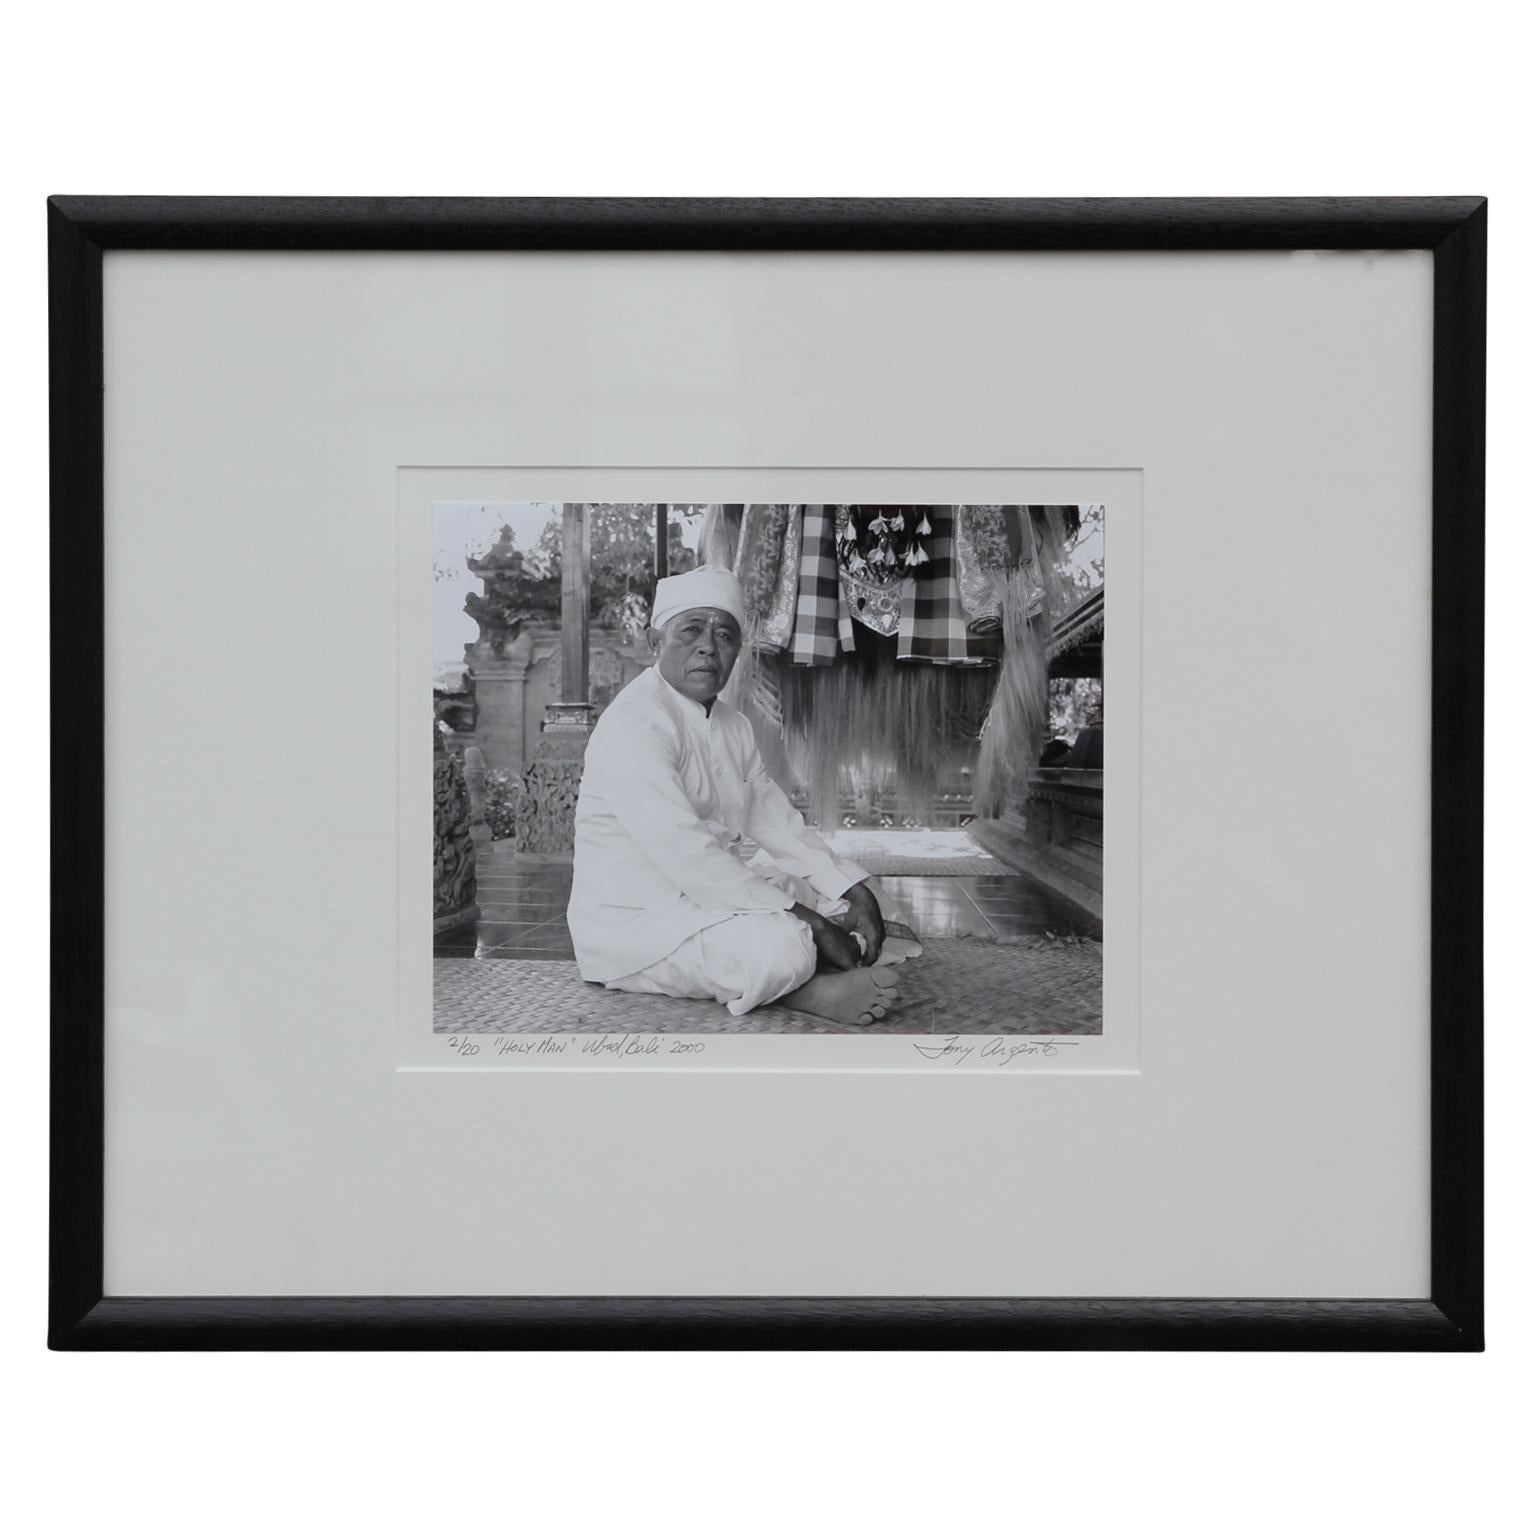 Tony Argento Black and White Photograph - "Holy Man" Ubud, Bali Indonesia Black and White Figurative Photograph